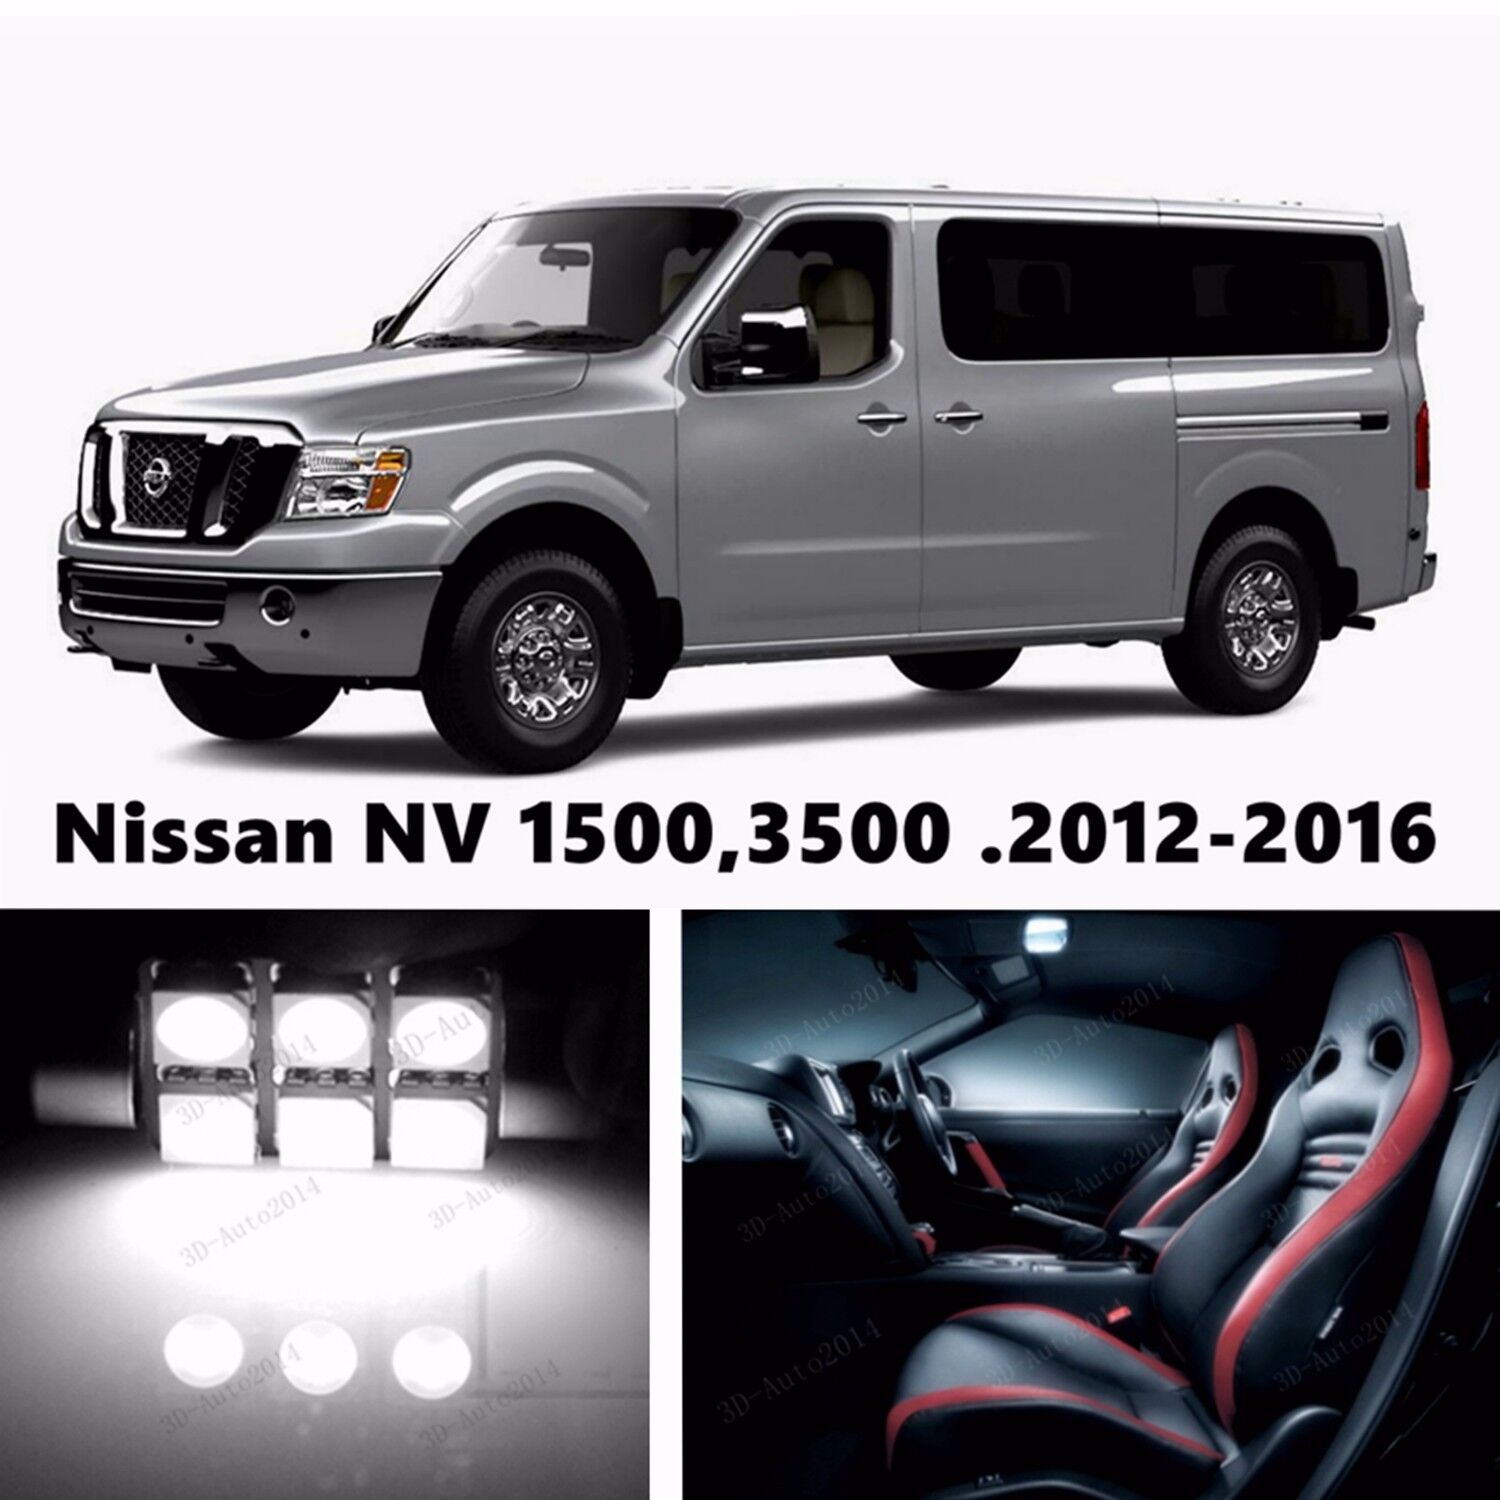 19pcs LED Xenon White Light Interior Package Kit for Nissan NV 1500,3500 . 2016 6507024103563 | eBay